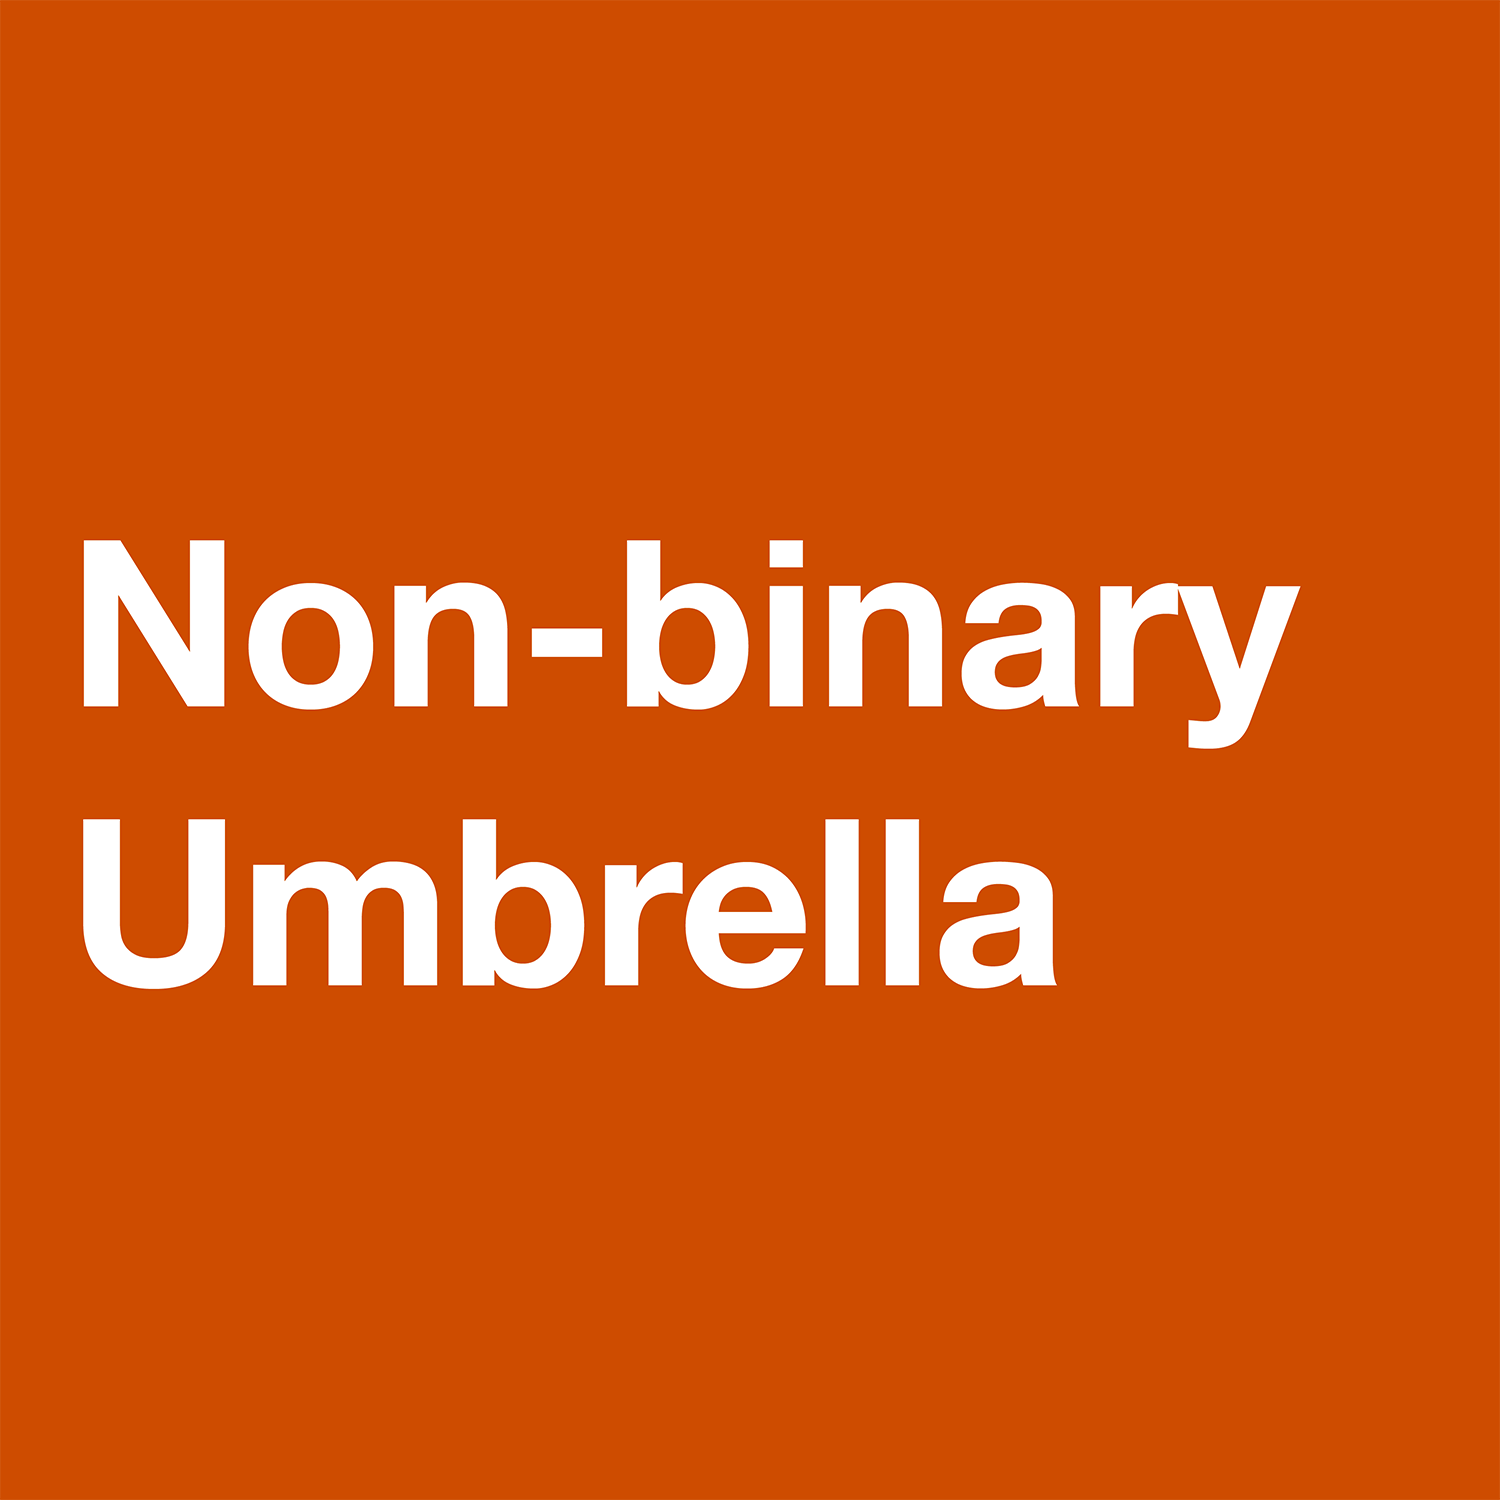  Non-binary Umbrella Definition 